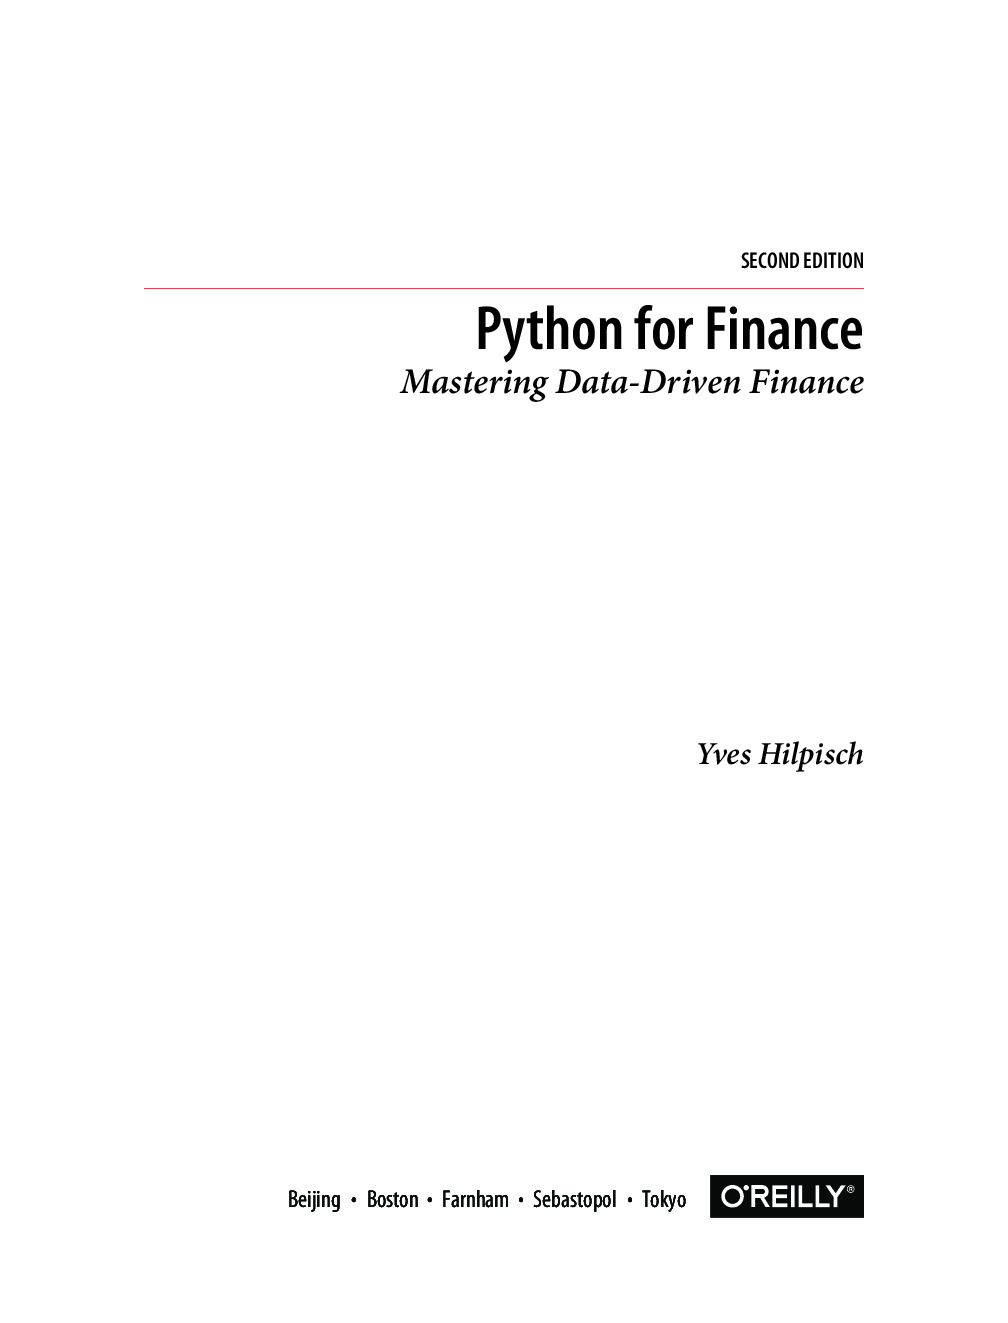 PythonForFinance